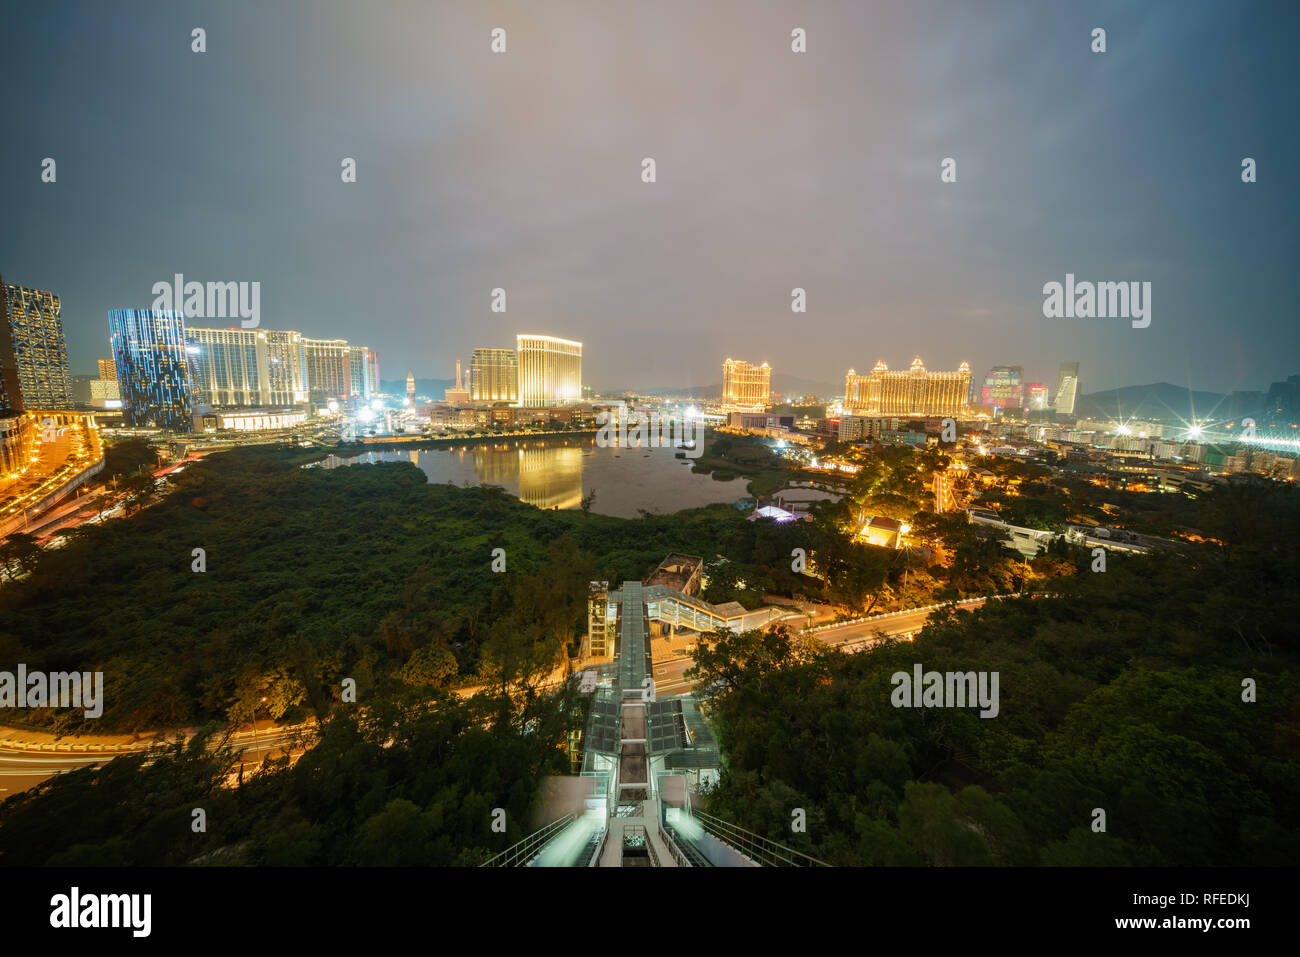 Notte Vista aerea del Venetian Macao con l'ascensore inclinato dal Grande Hill Foto Stock